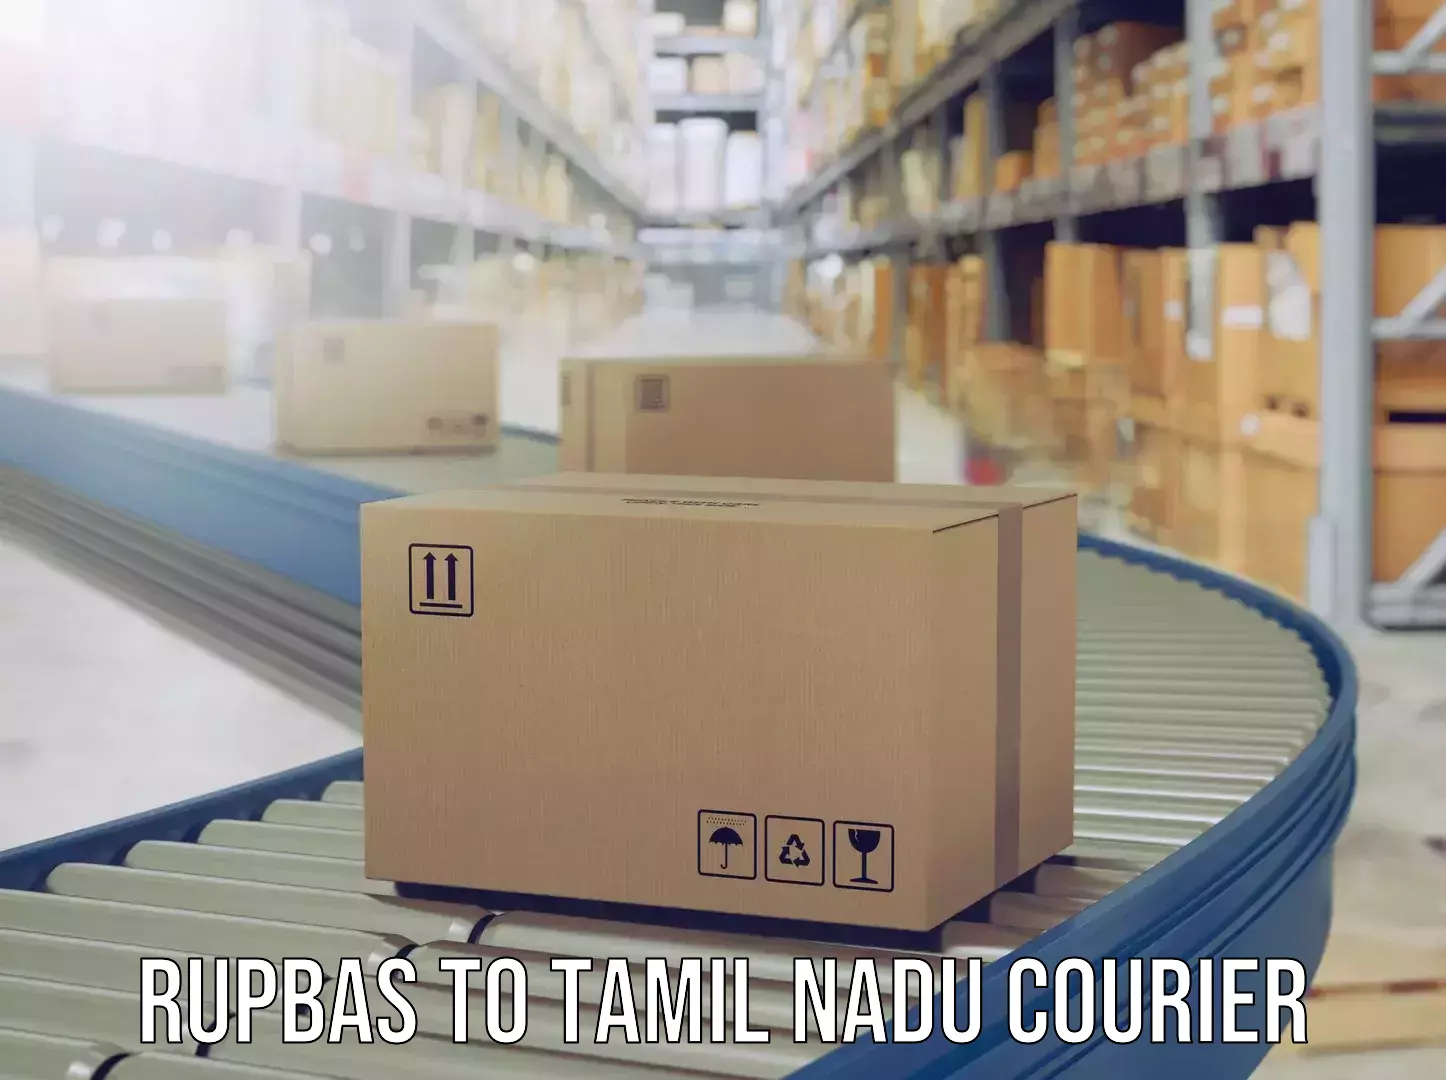 Emergency baggage service Rupbas to Tamil Nadu